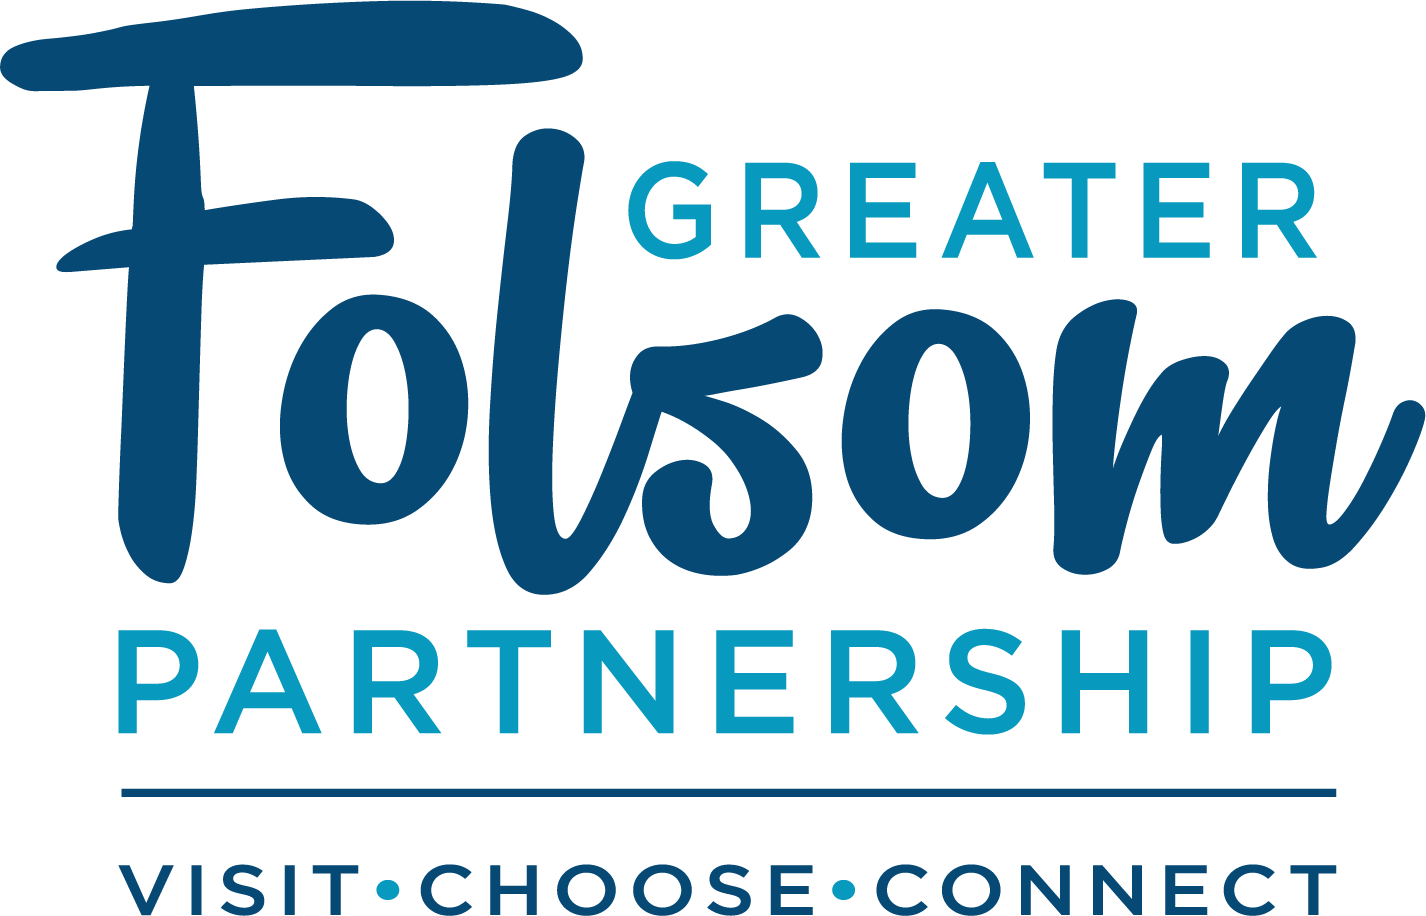 Greater Folsom Partnership